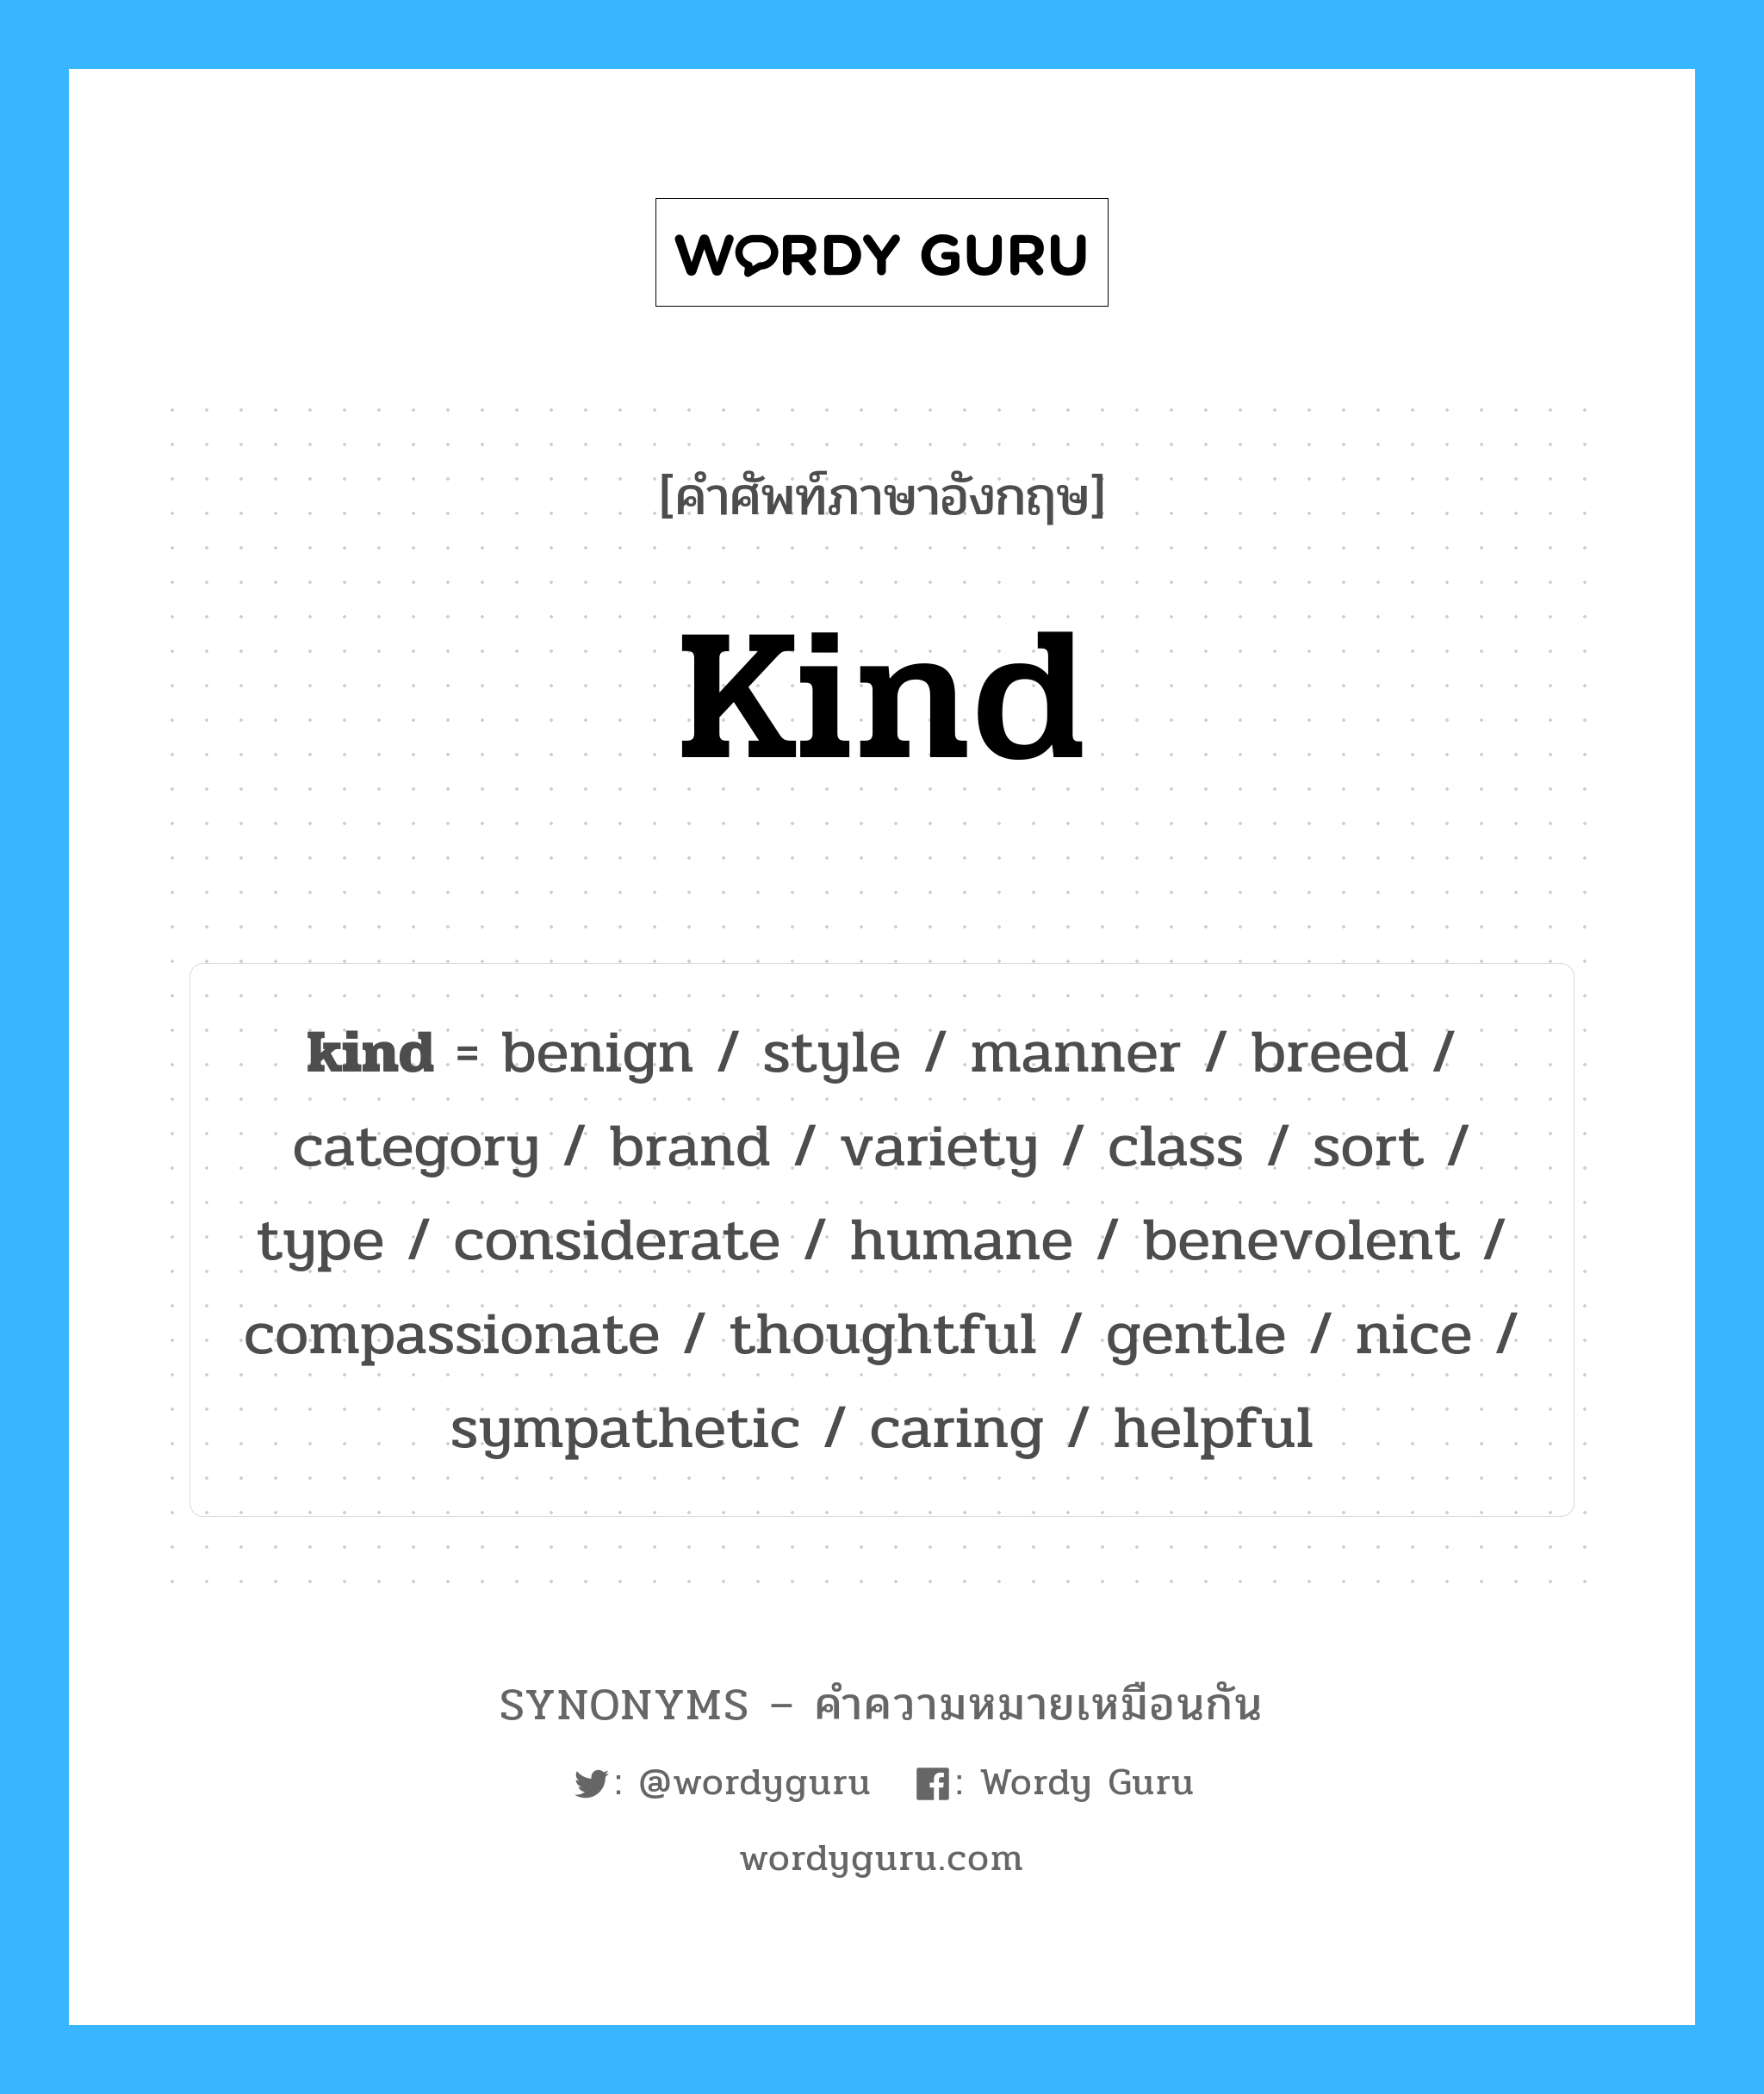 kind เป็นหนึ่งใน nice และมีคำอื่น ๆ อีกดังนี้, คำศัพท์ภาษาอังกฤษ kind ความหมายคล้ายกันกับ nice แปลว่า ดี หมวด nice